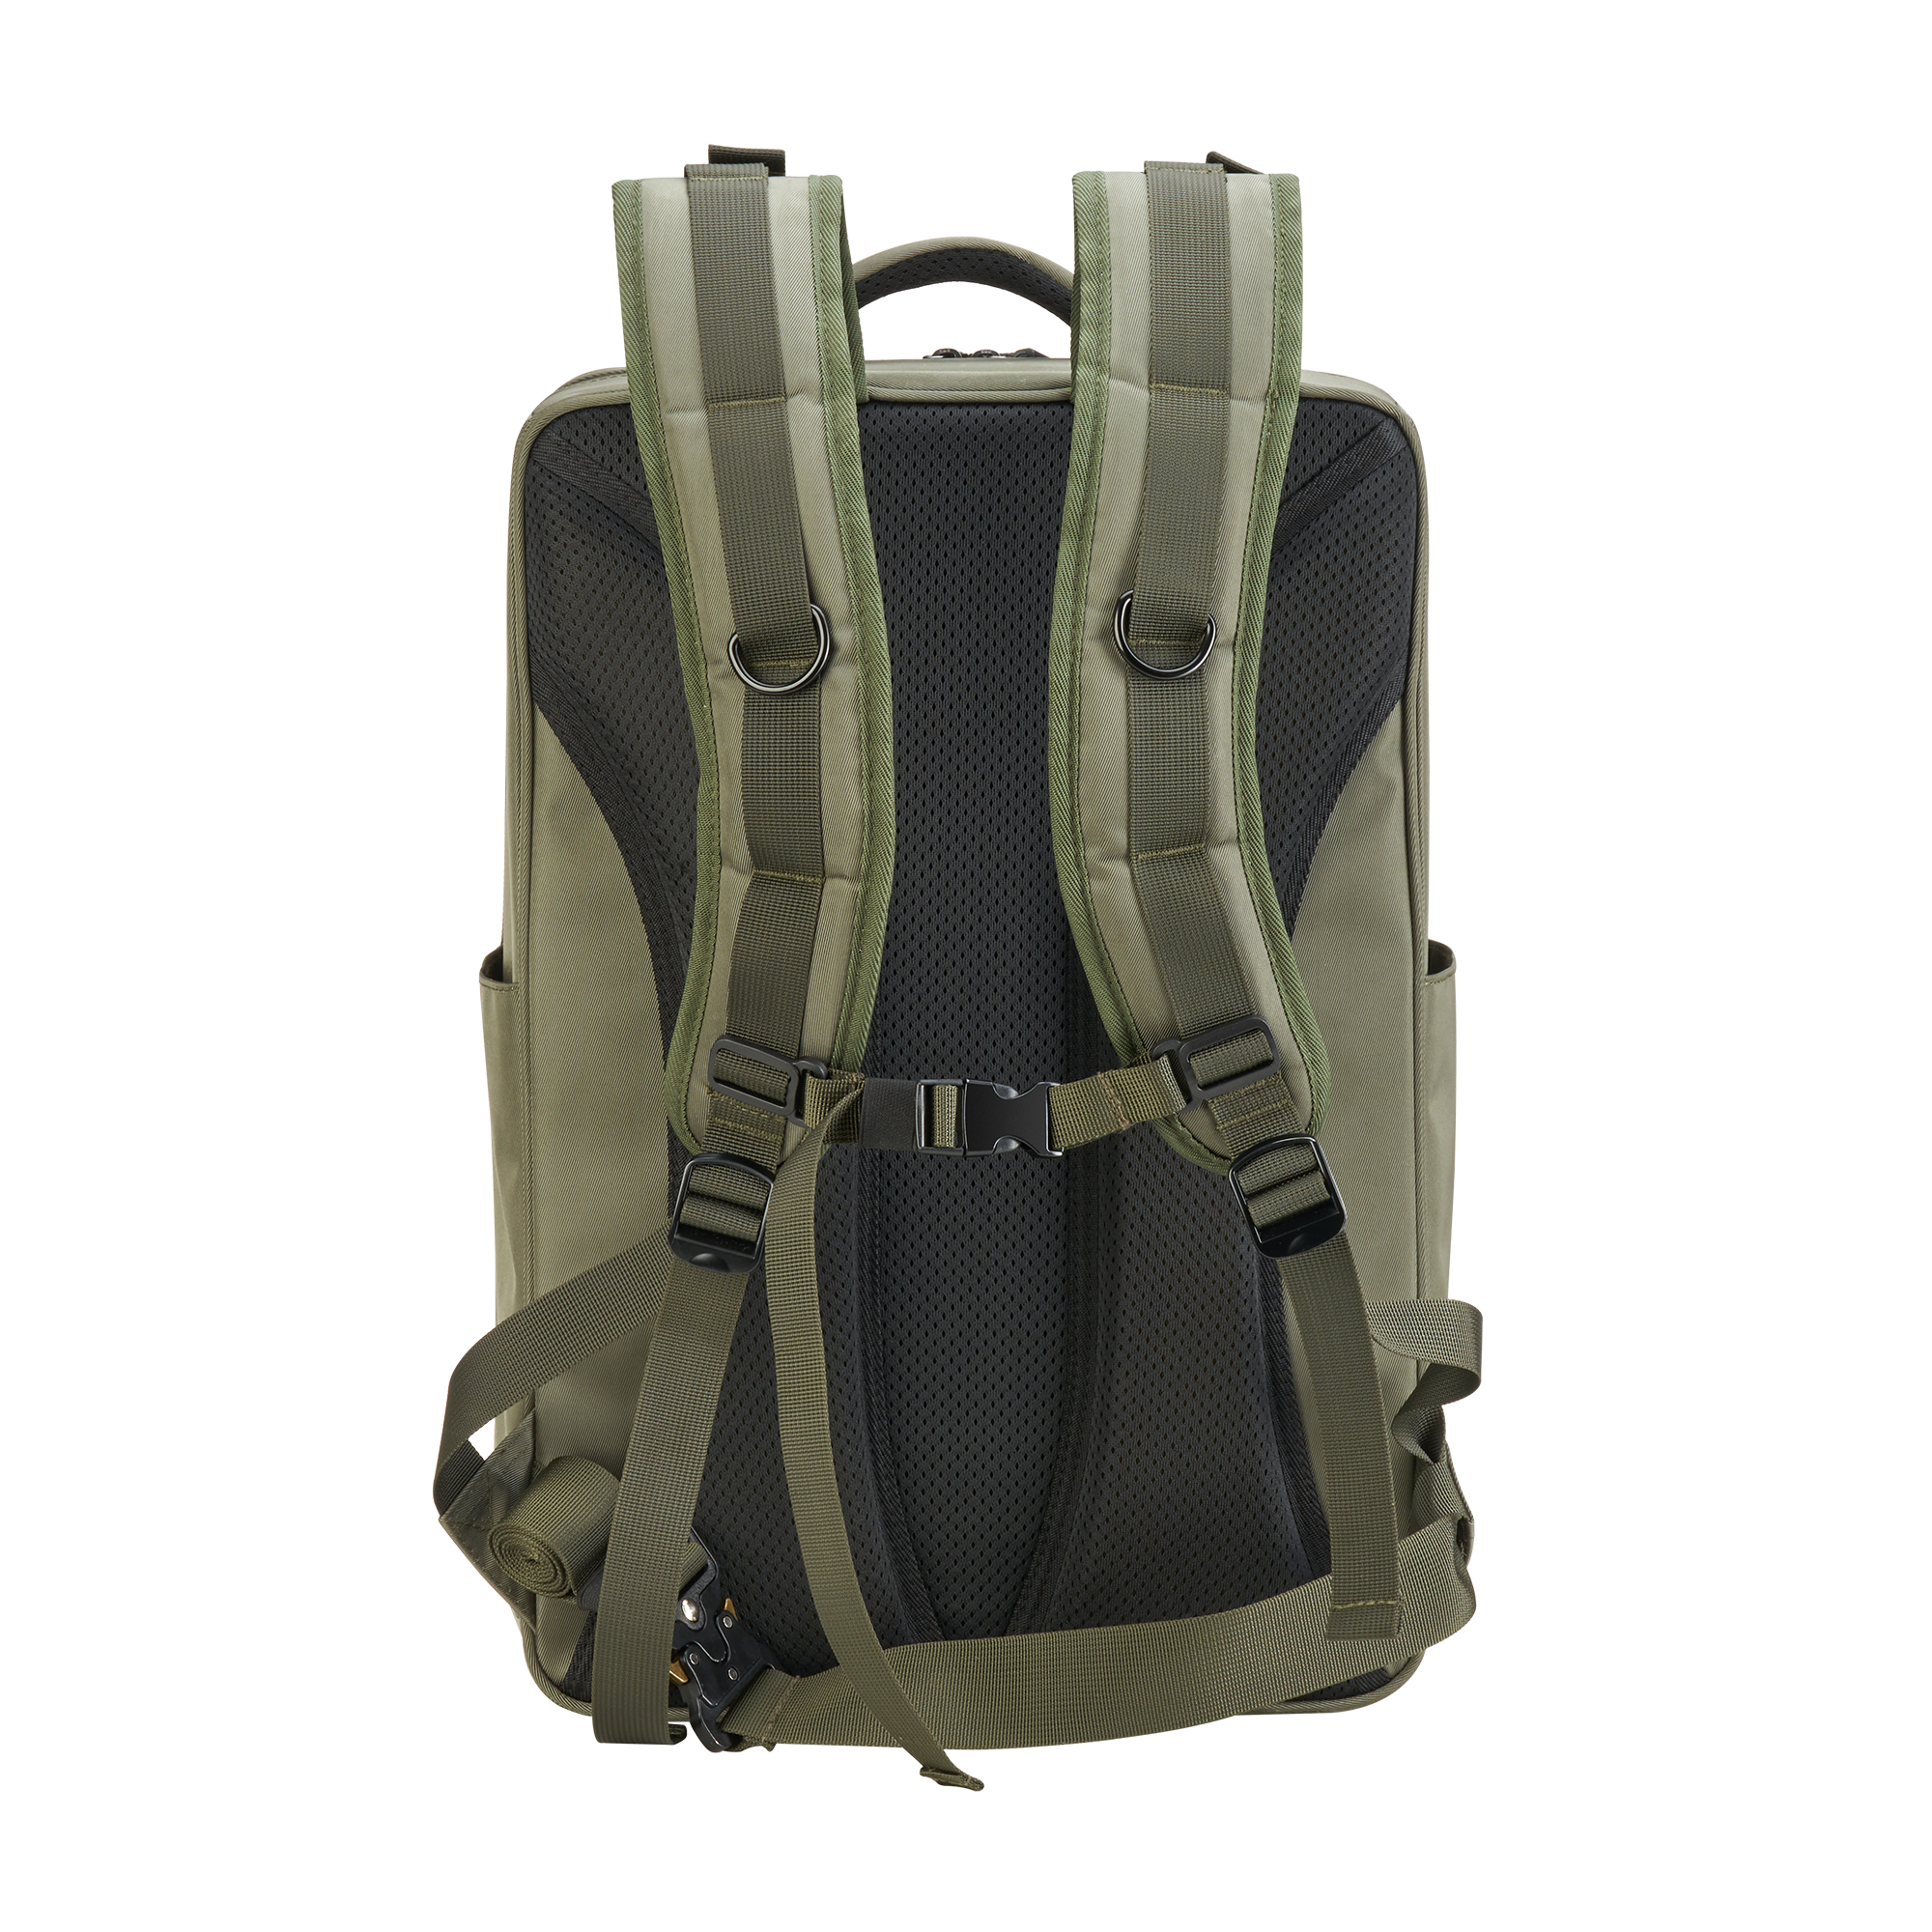 오텔 로보틱스 드론 에보 맥스4T Autel Robotics Drone Max4T 이동형 백팩 backpack